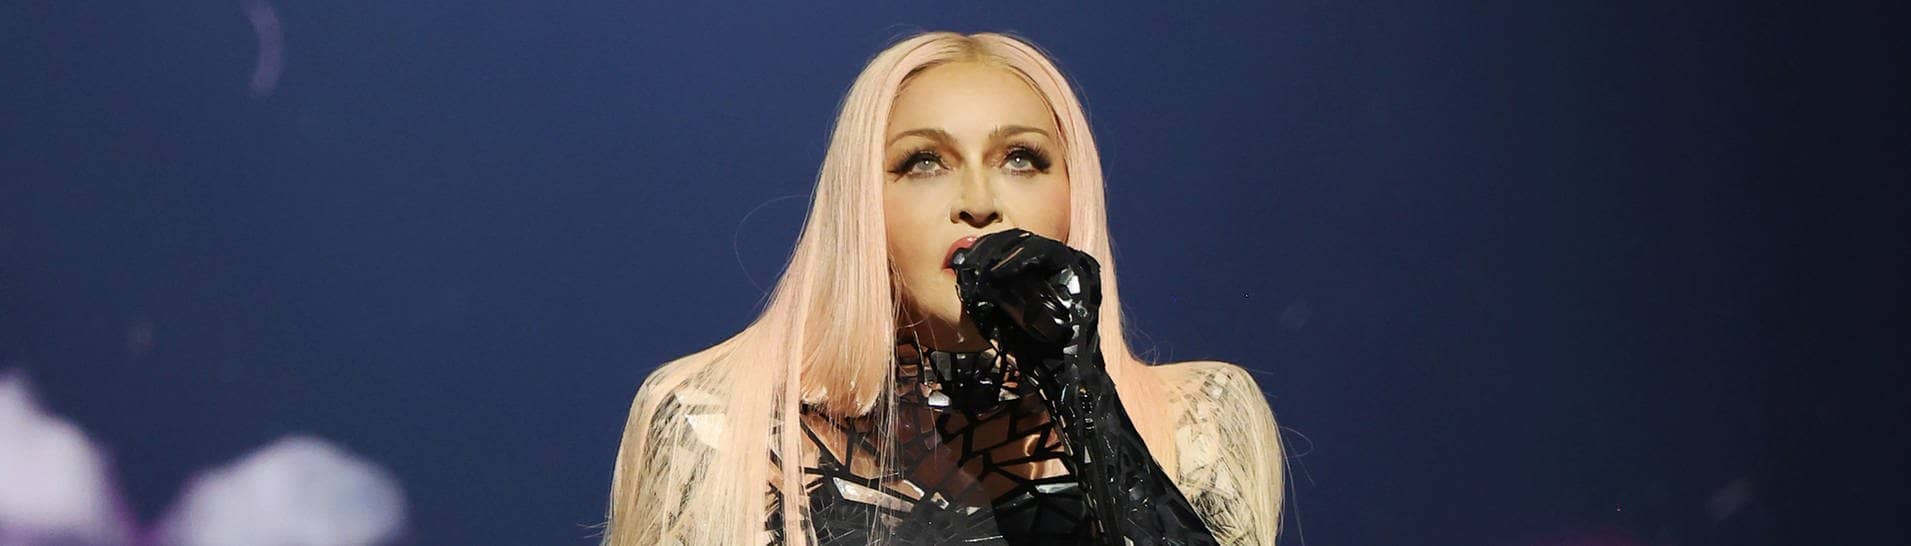 Madonna in einem glitzernden Outfit auf der Bühne der 02 Arena in London beim Auftakt ihrer Welttournee.